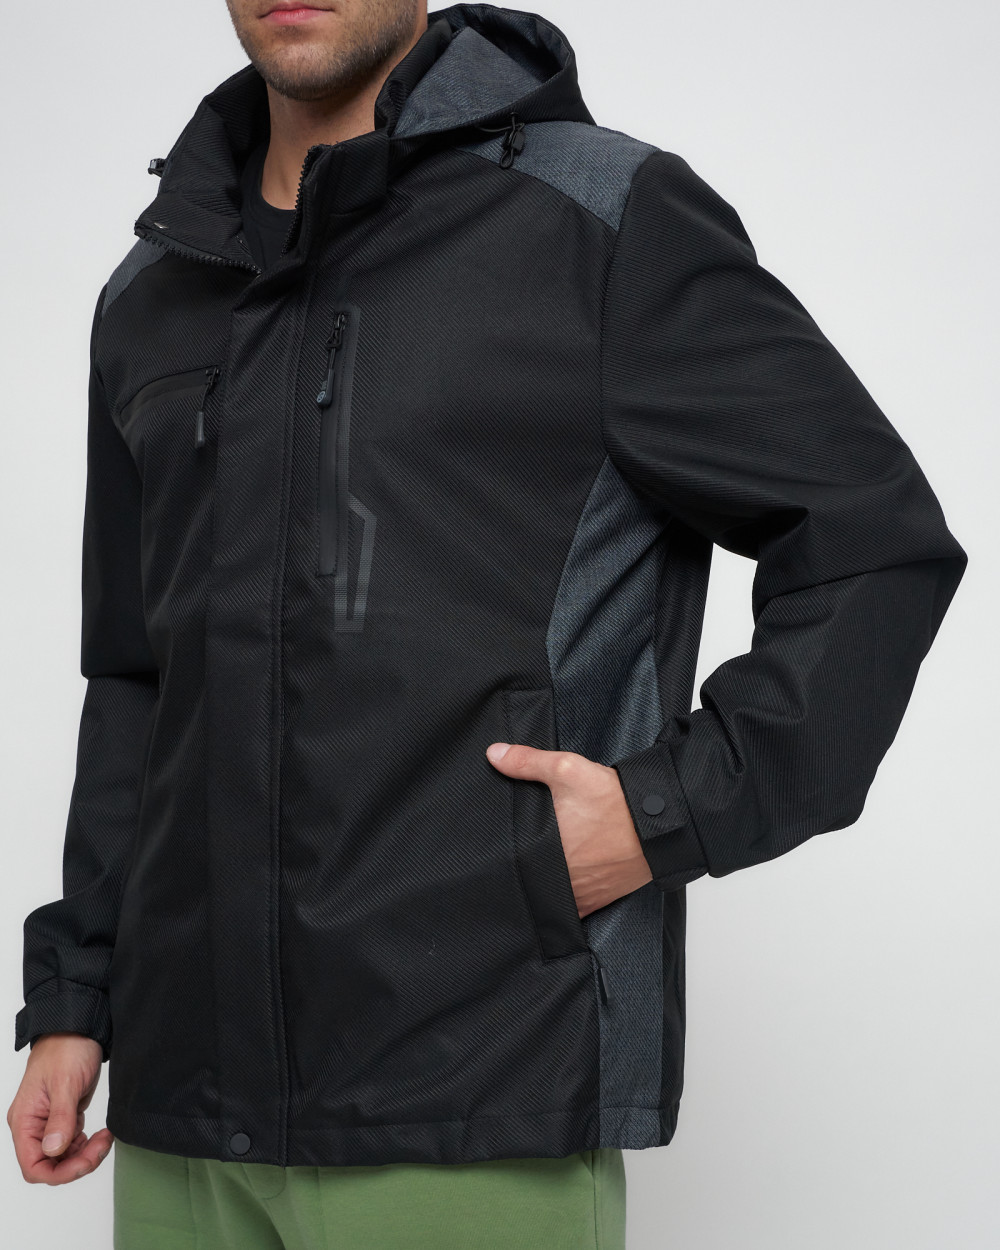 Купить куртку мужскую спортивную весеннюю оптом от производителя недорого в Москве 6652Ch 1